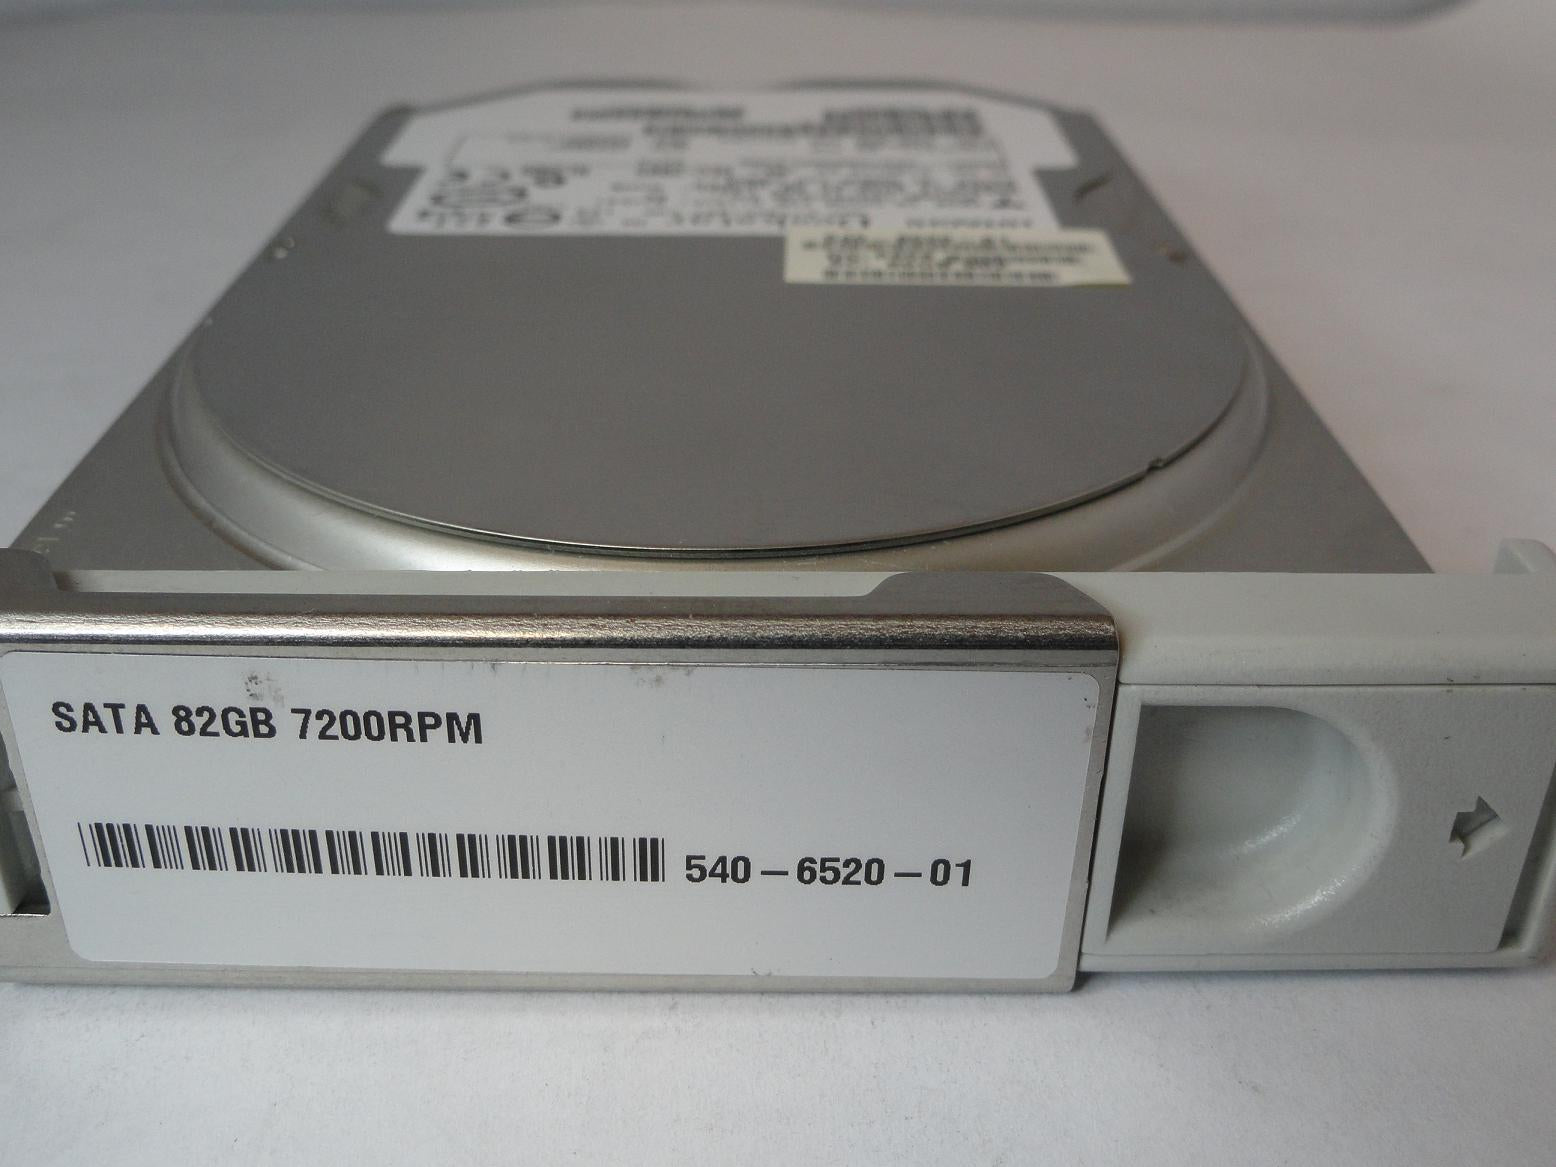 PR14053_0A30354_Hitachi Sun 80GB SATA 7200rpm 3.5in HDD in Tray - Image3